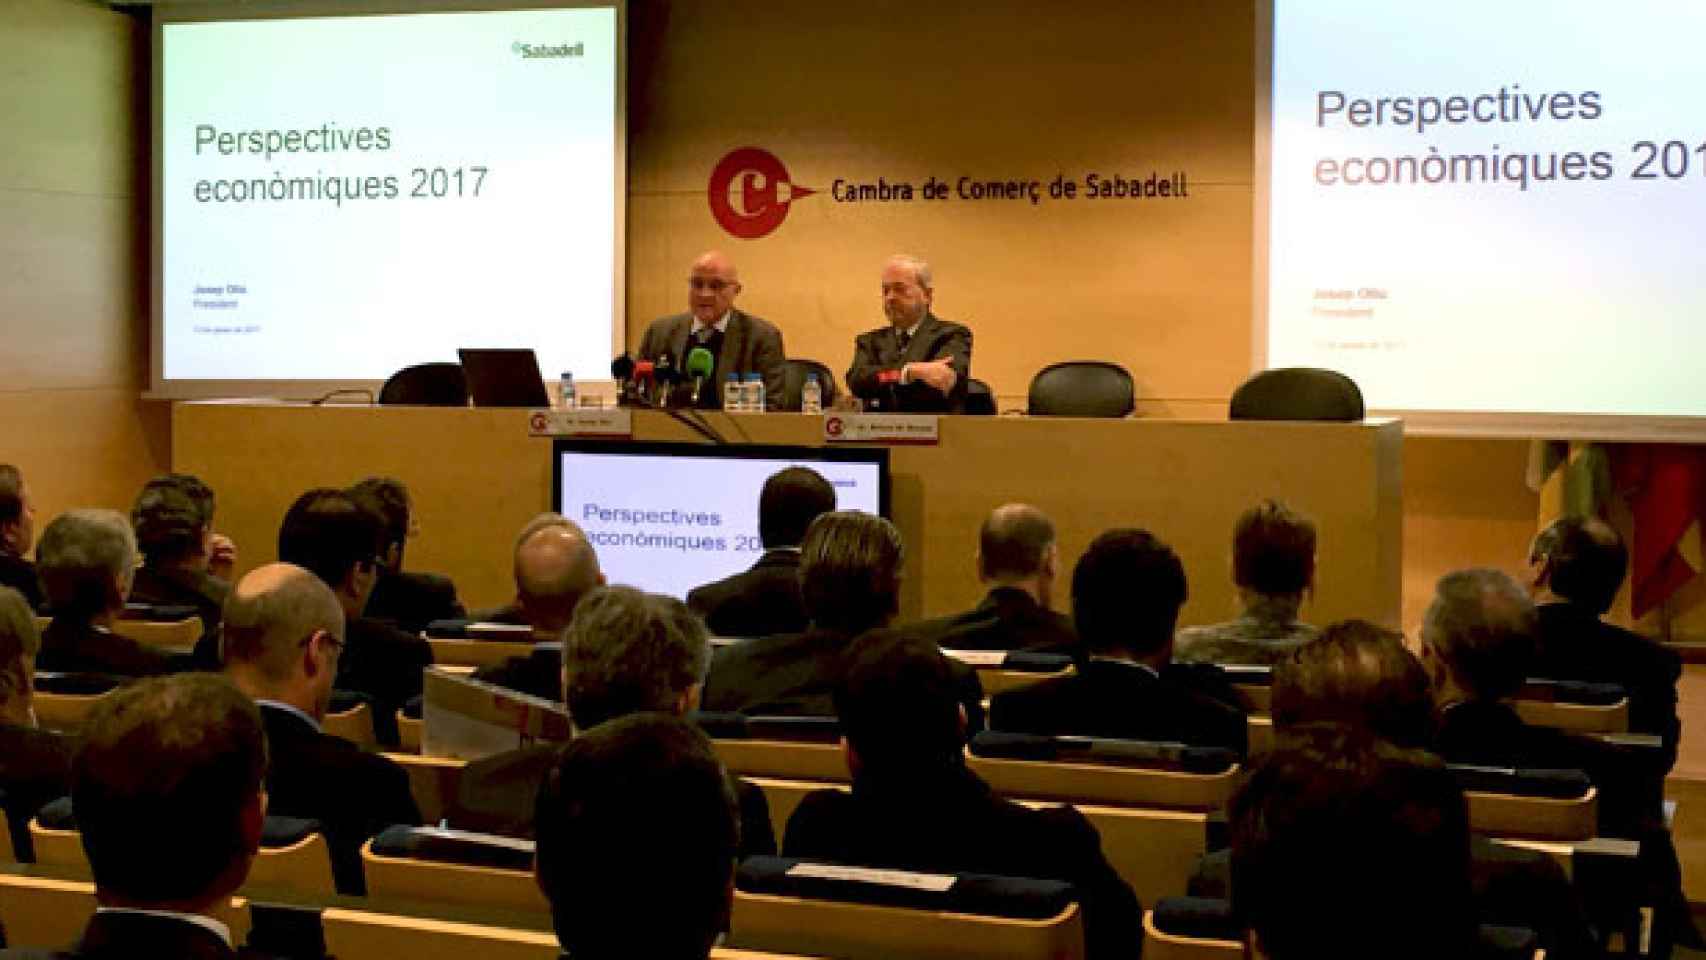 Josep Oliu, presidente de Banco Sabadell, en la conferencia sobre perspectivas económicas de 2017 en la cámara de comercio de su ciudad / CG